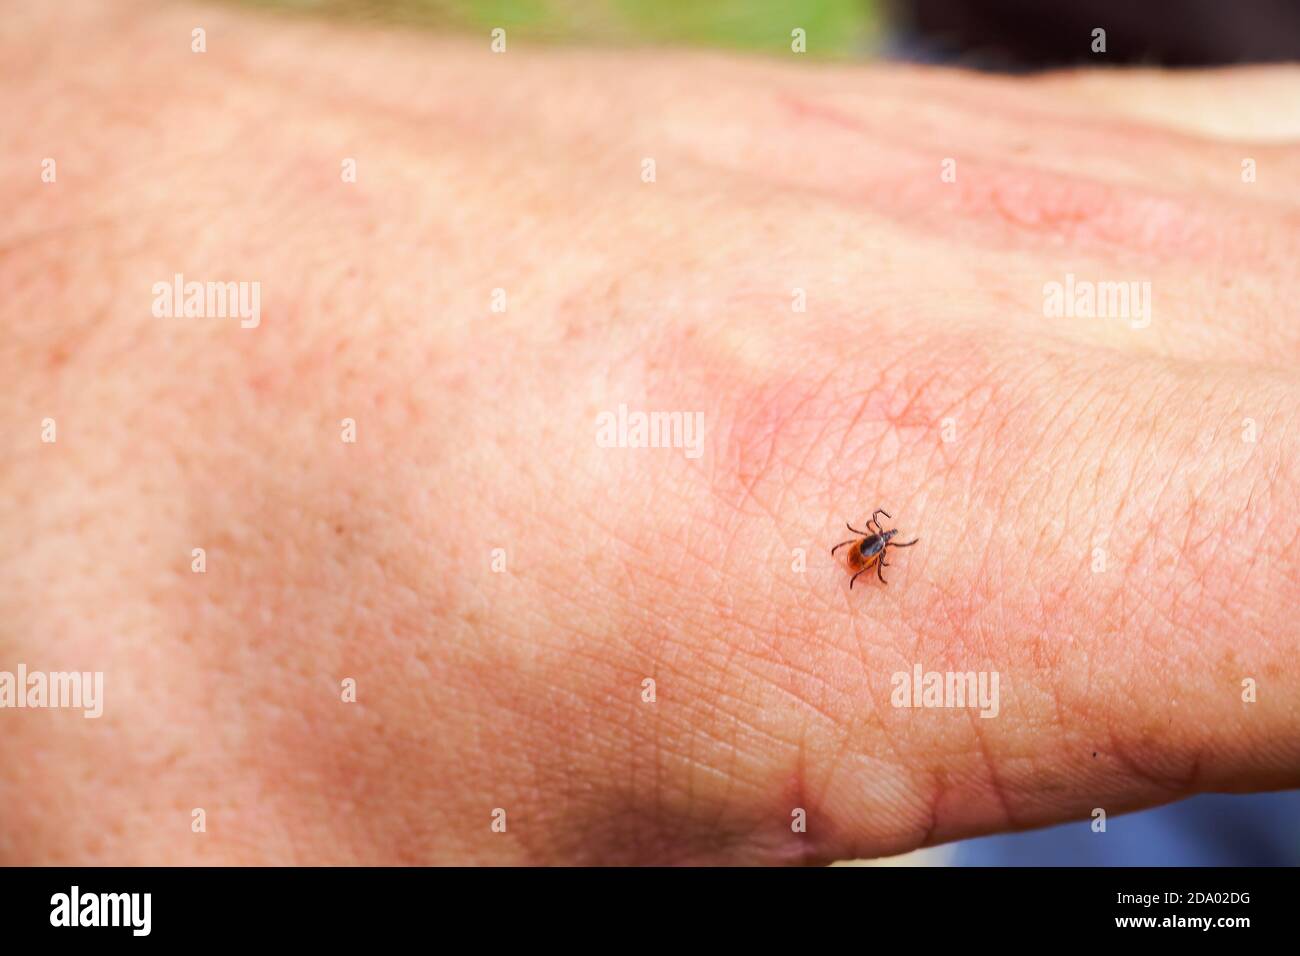 Tique à échelle, acarien dur de la famille Ixodidae sur la main humaine. Il porte des agents pathogènes qui peuvent causer des maladies humaines. Banque D'Images